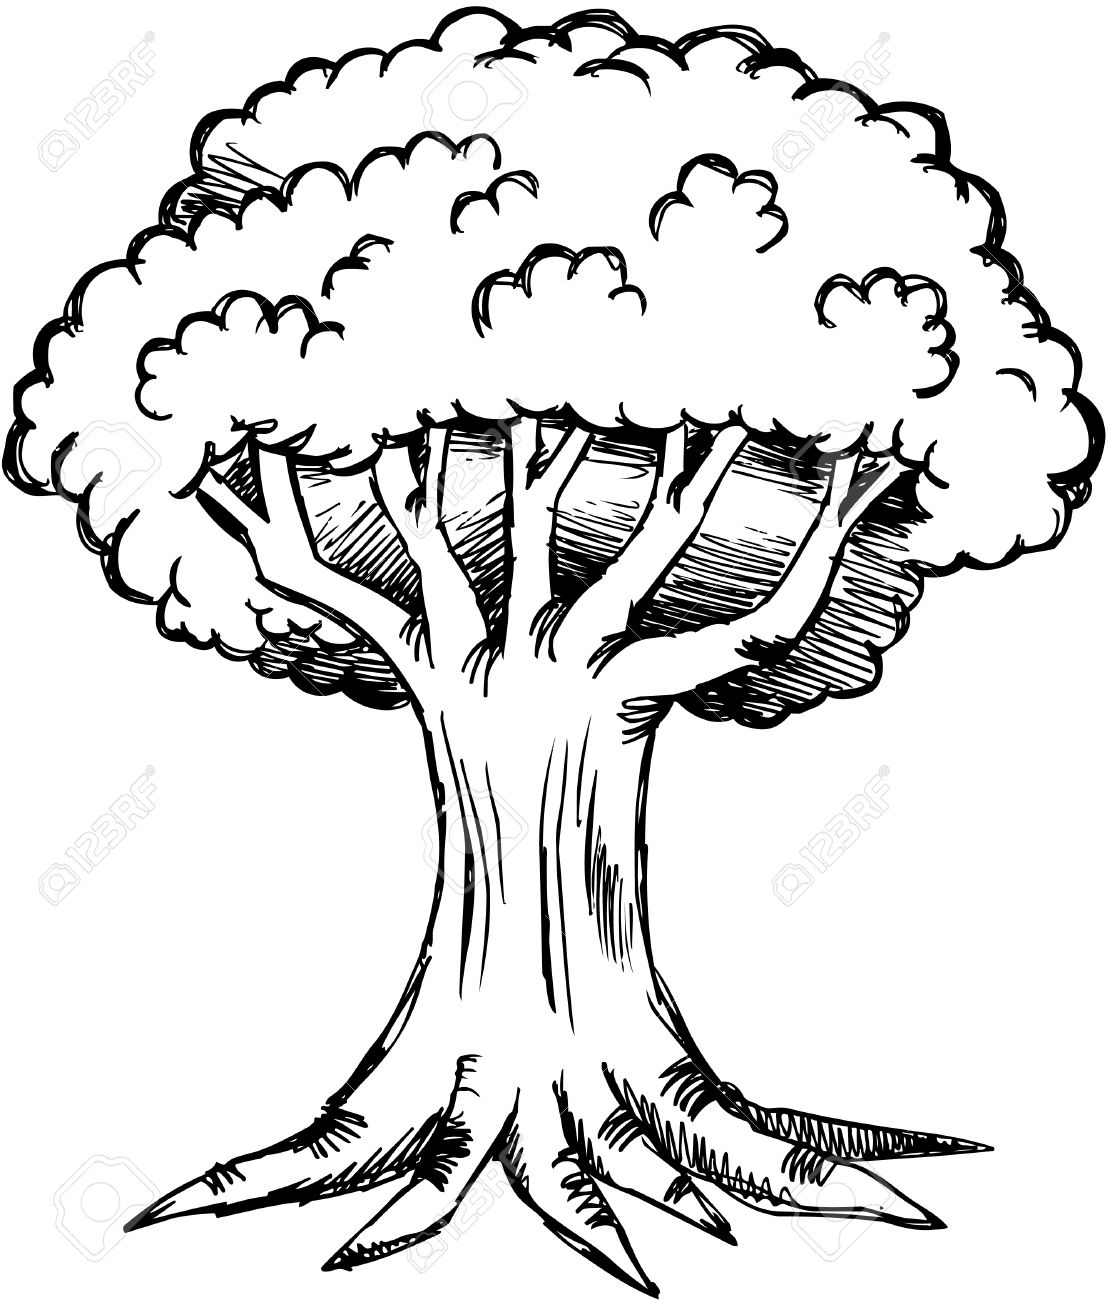 Раскраска дерево дуб с корнями